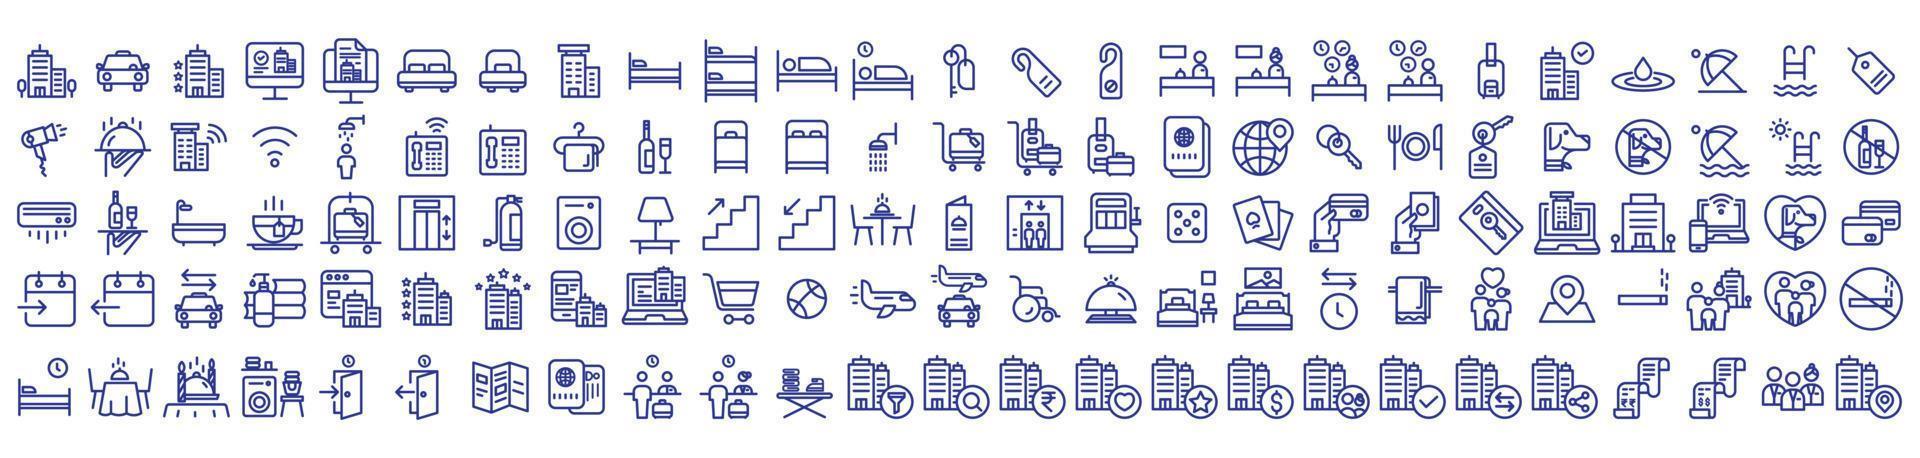 Sammlung von Symbolen im Zusammenhang mit Hotels und Lodges, einschließlich Symbolen wie Restaurant, Taxi, Zimmer, Spa und mehr. Vektorgrafiken, pixelgenau vektor